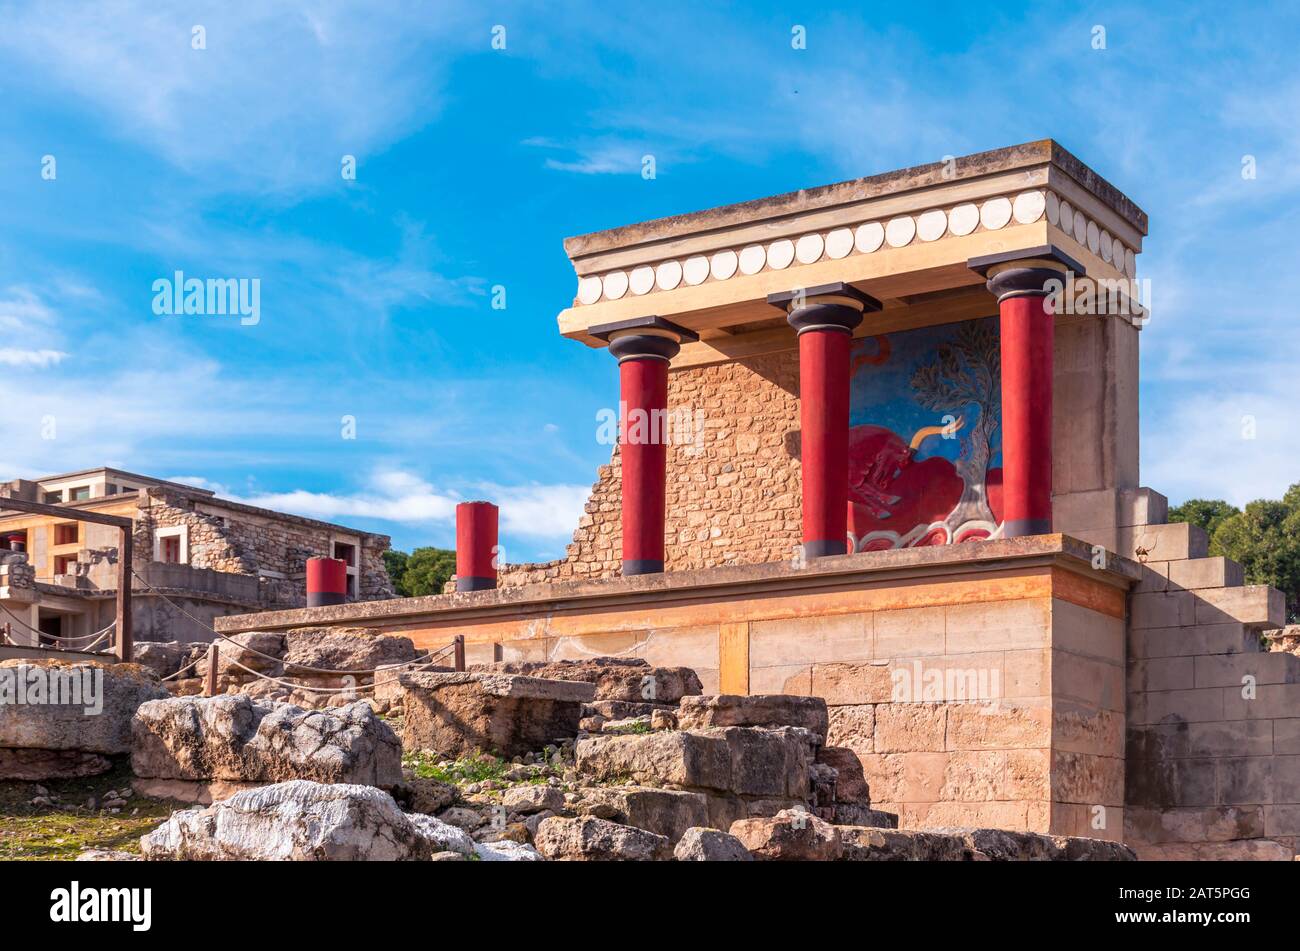 Blick auf die Ruinen des berühmten minoischen Palastes von Knossos, dem Zentrum der minoischen Zivilisation und einer der größten archäologischen Stätten Griechenlands. Stockfoto